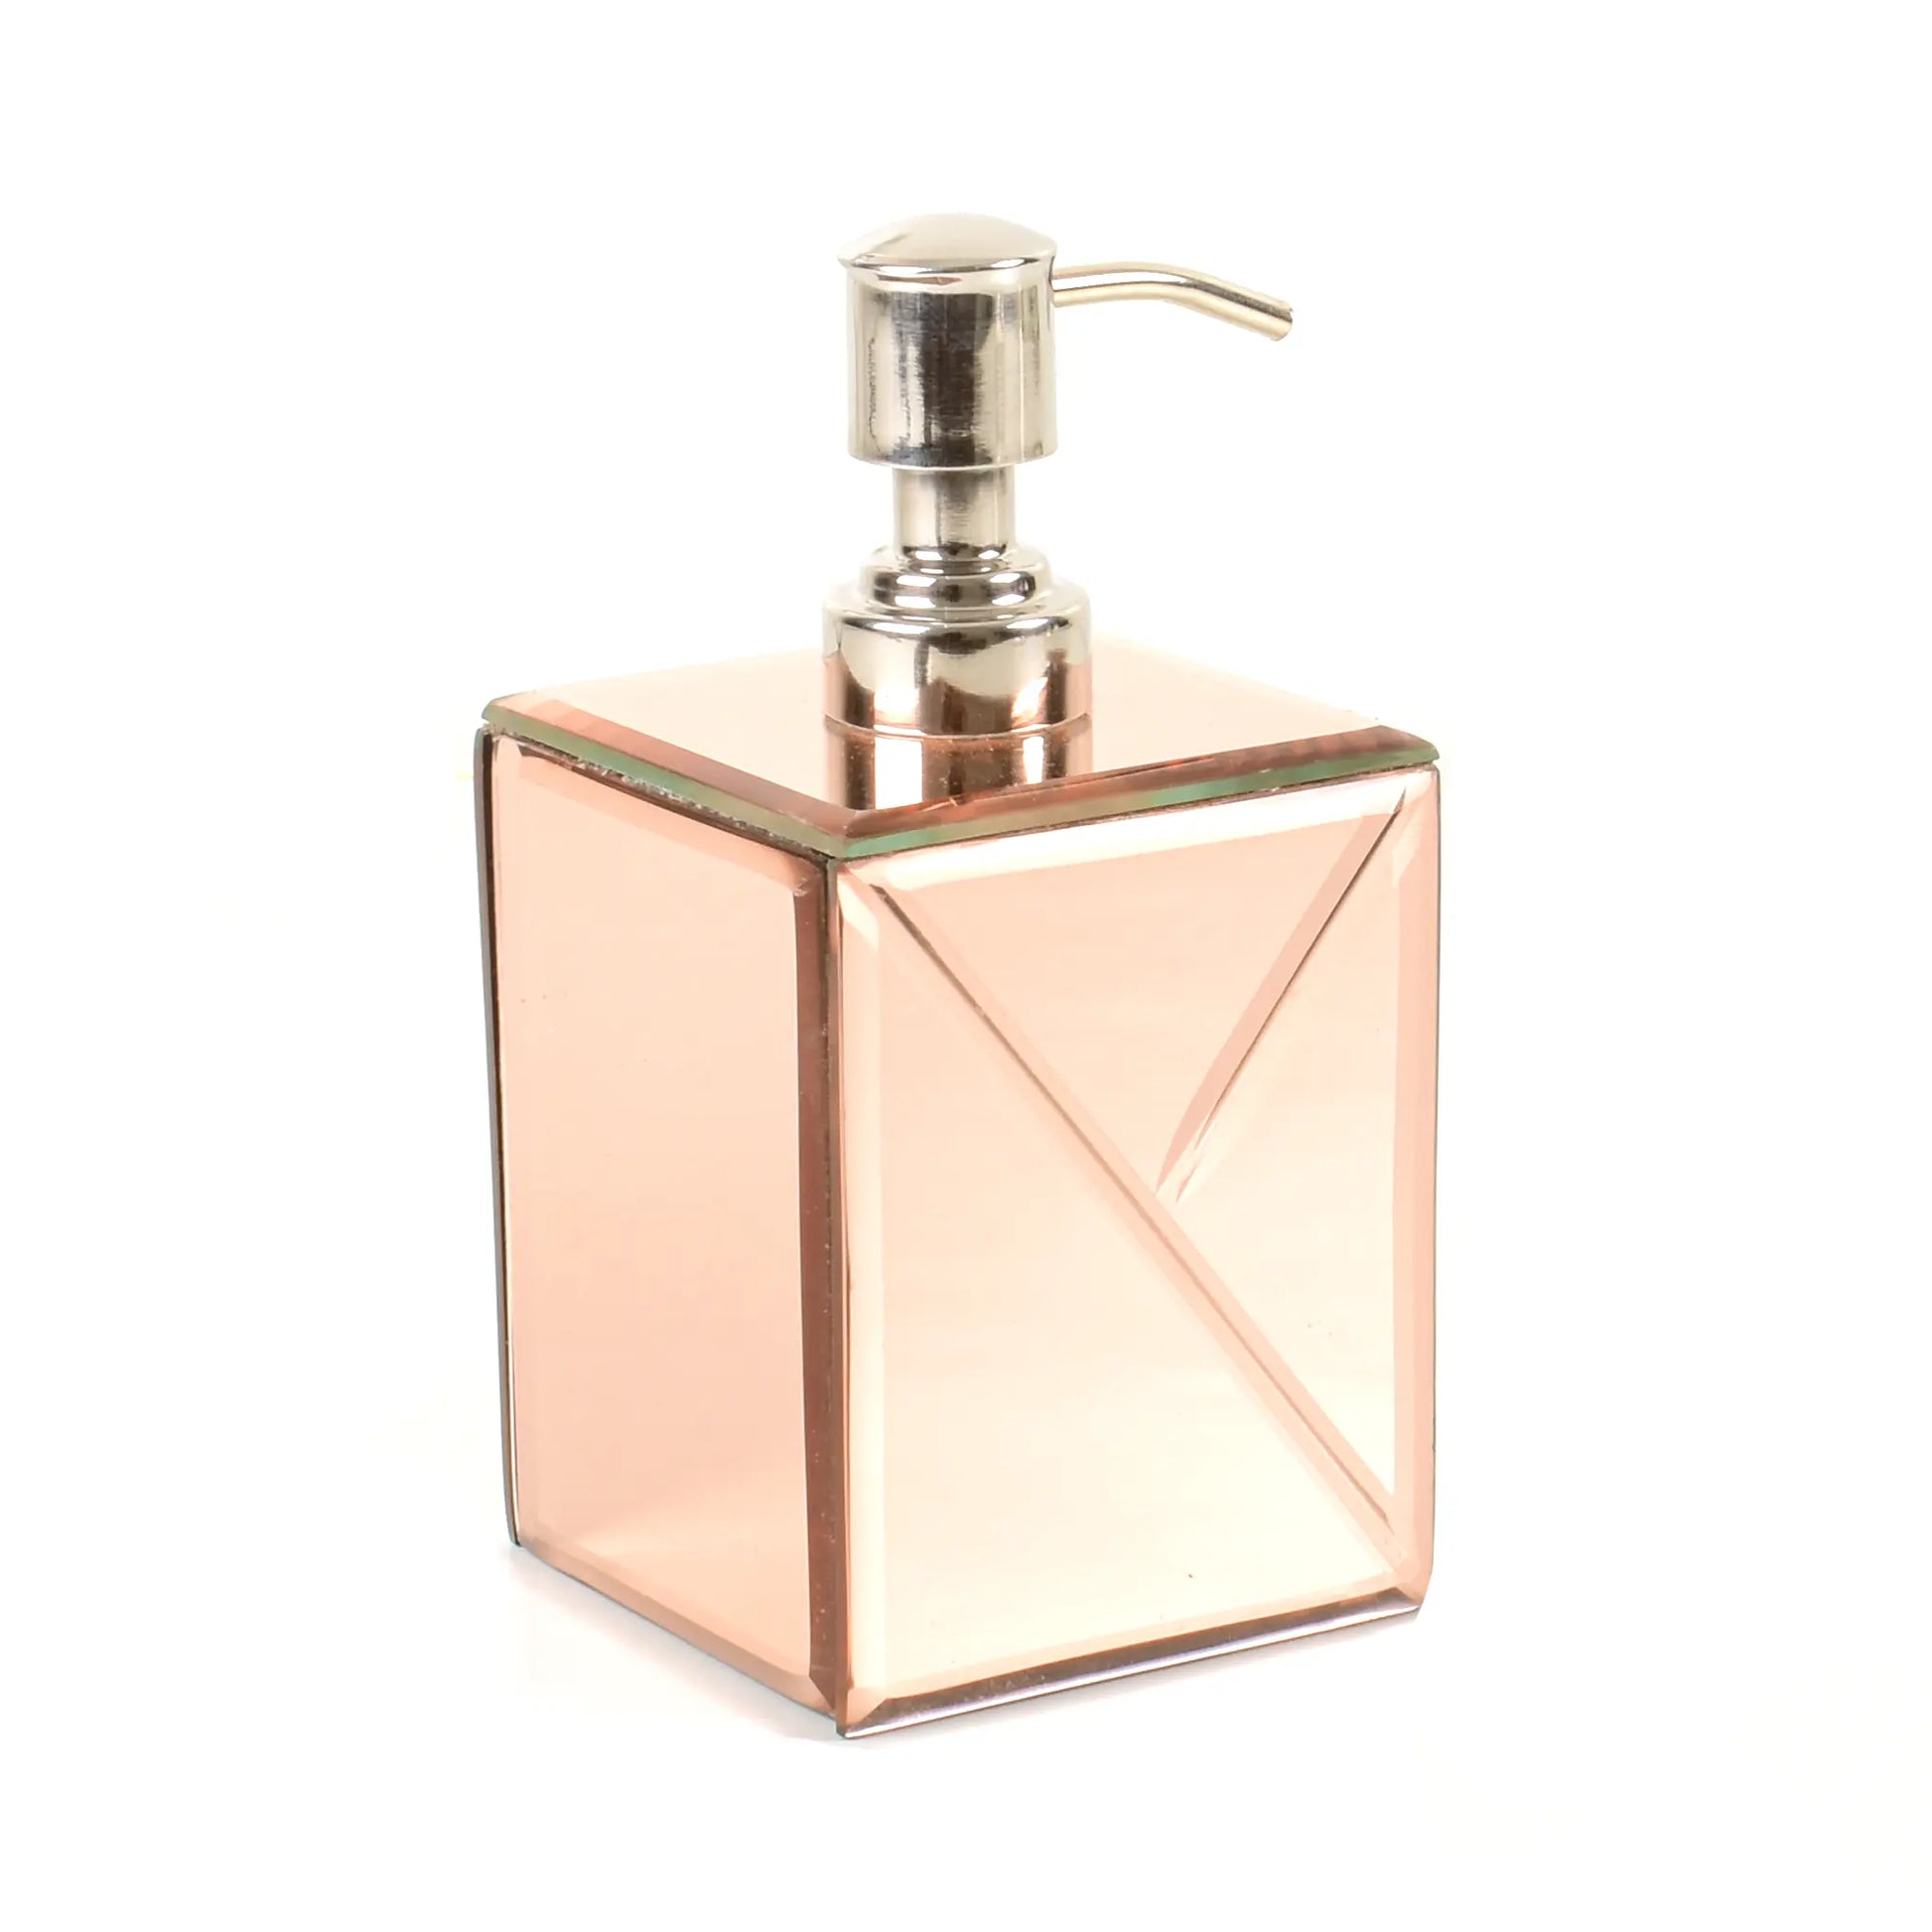 Mirror Bathroom Liquid Soap Dispensor | Rose Gold | Lap Of Luxury Ichkan